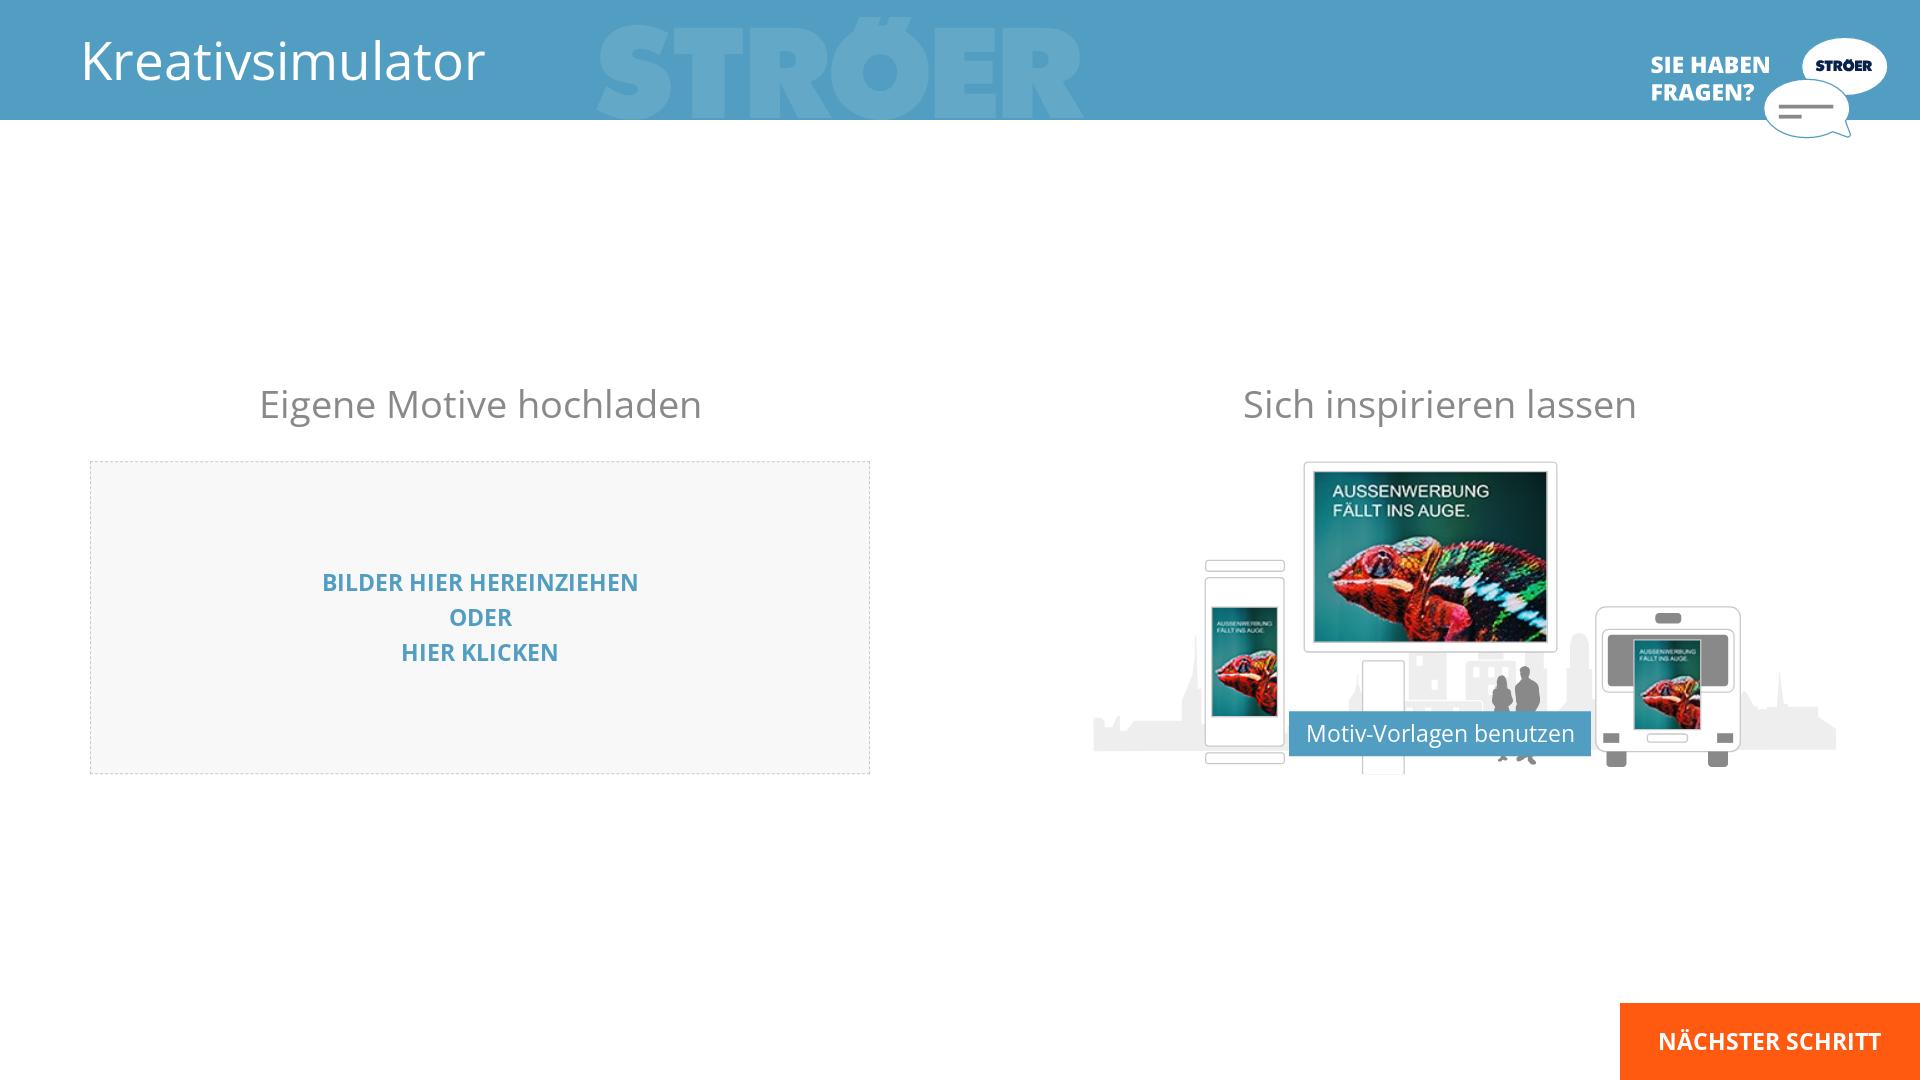 Website User Bewertung zu kreativsimulator.tools.stroeer.de